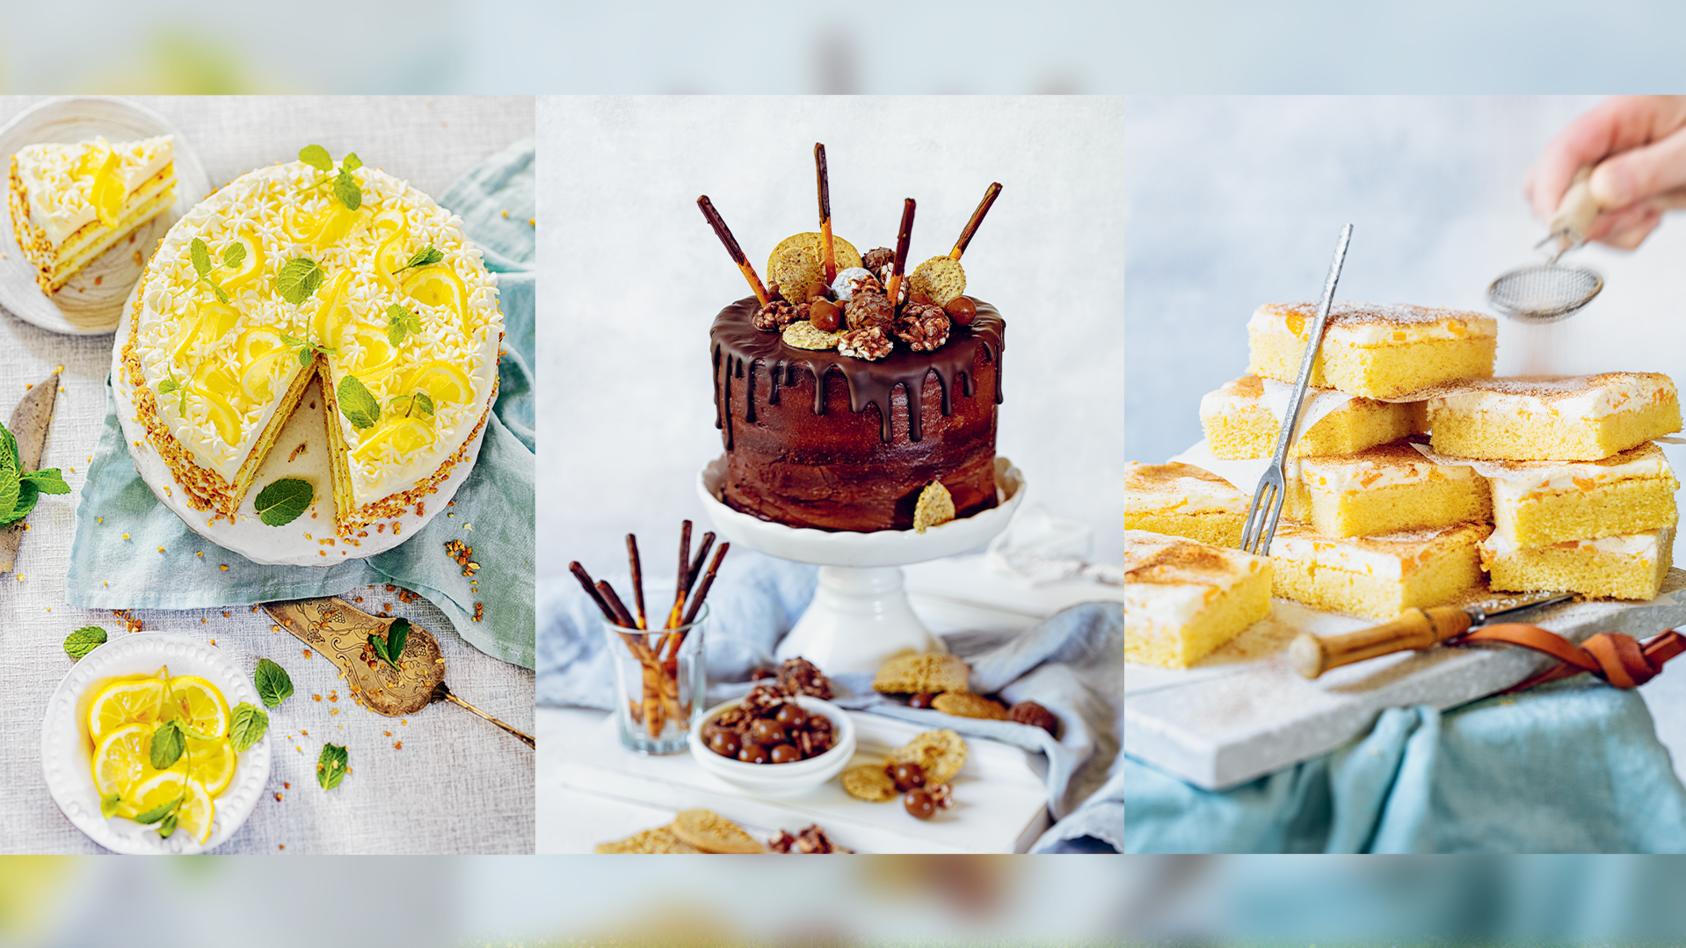 Bloggerin Tanja Gruber hat ein Backbuch für glutenfreie Torten und Kuchen geschrieben.